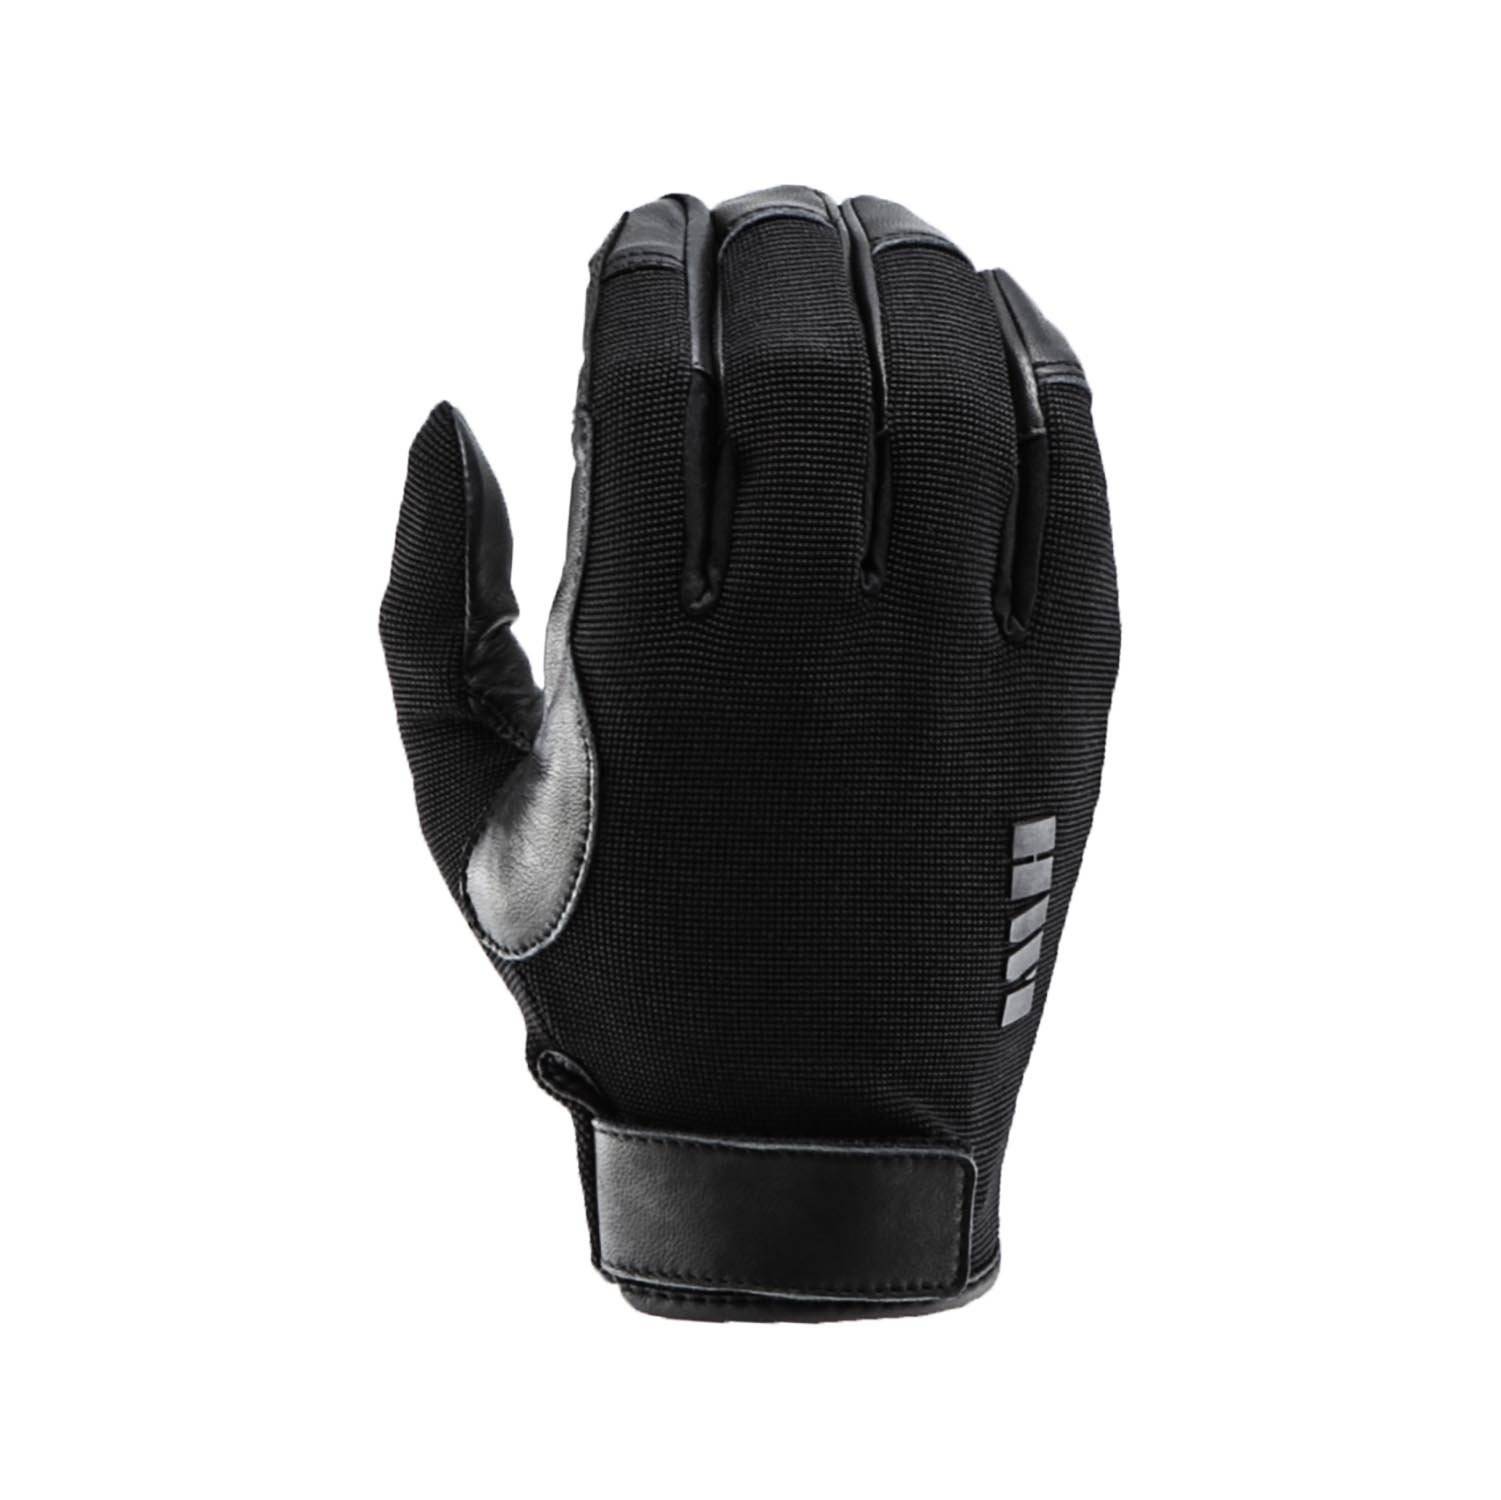 HWI Gear Unlined Duty Gloves